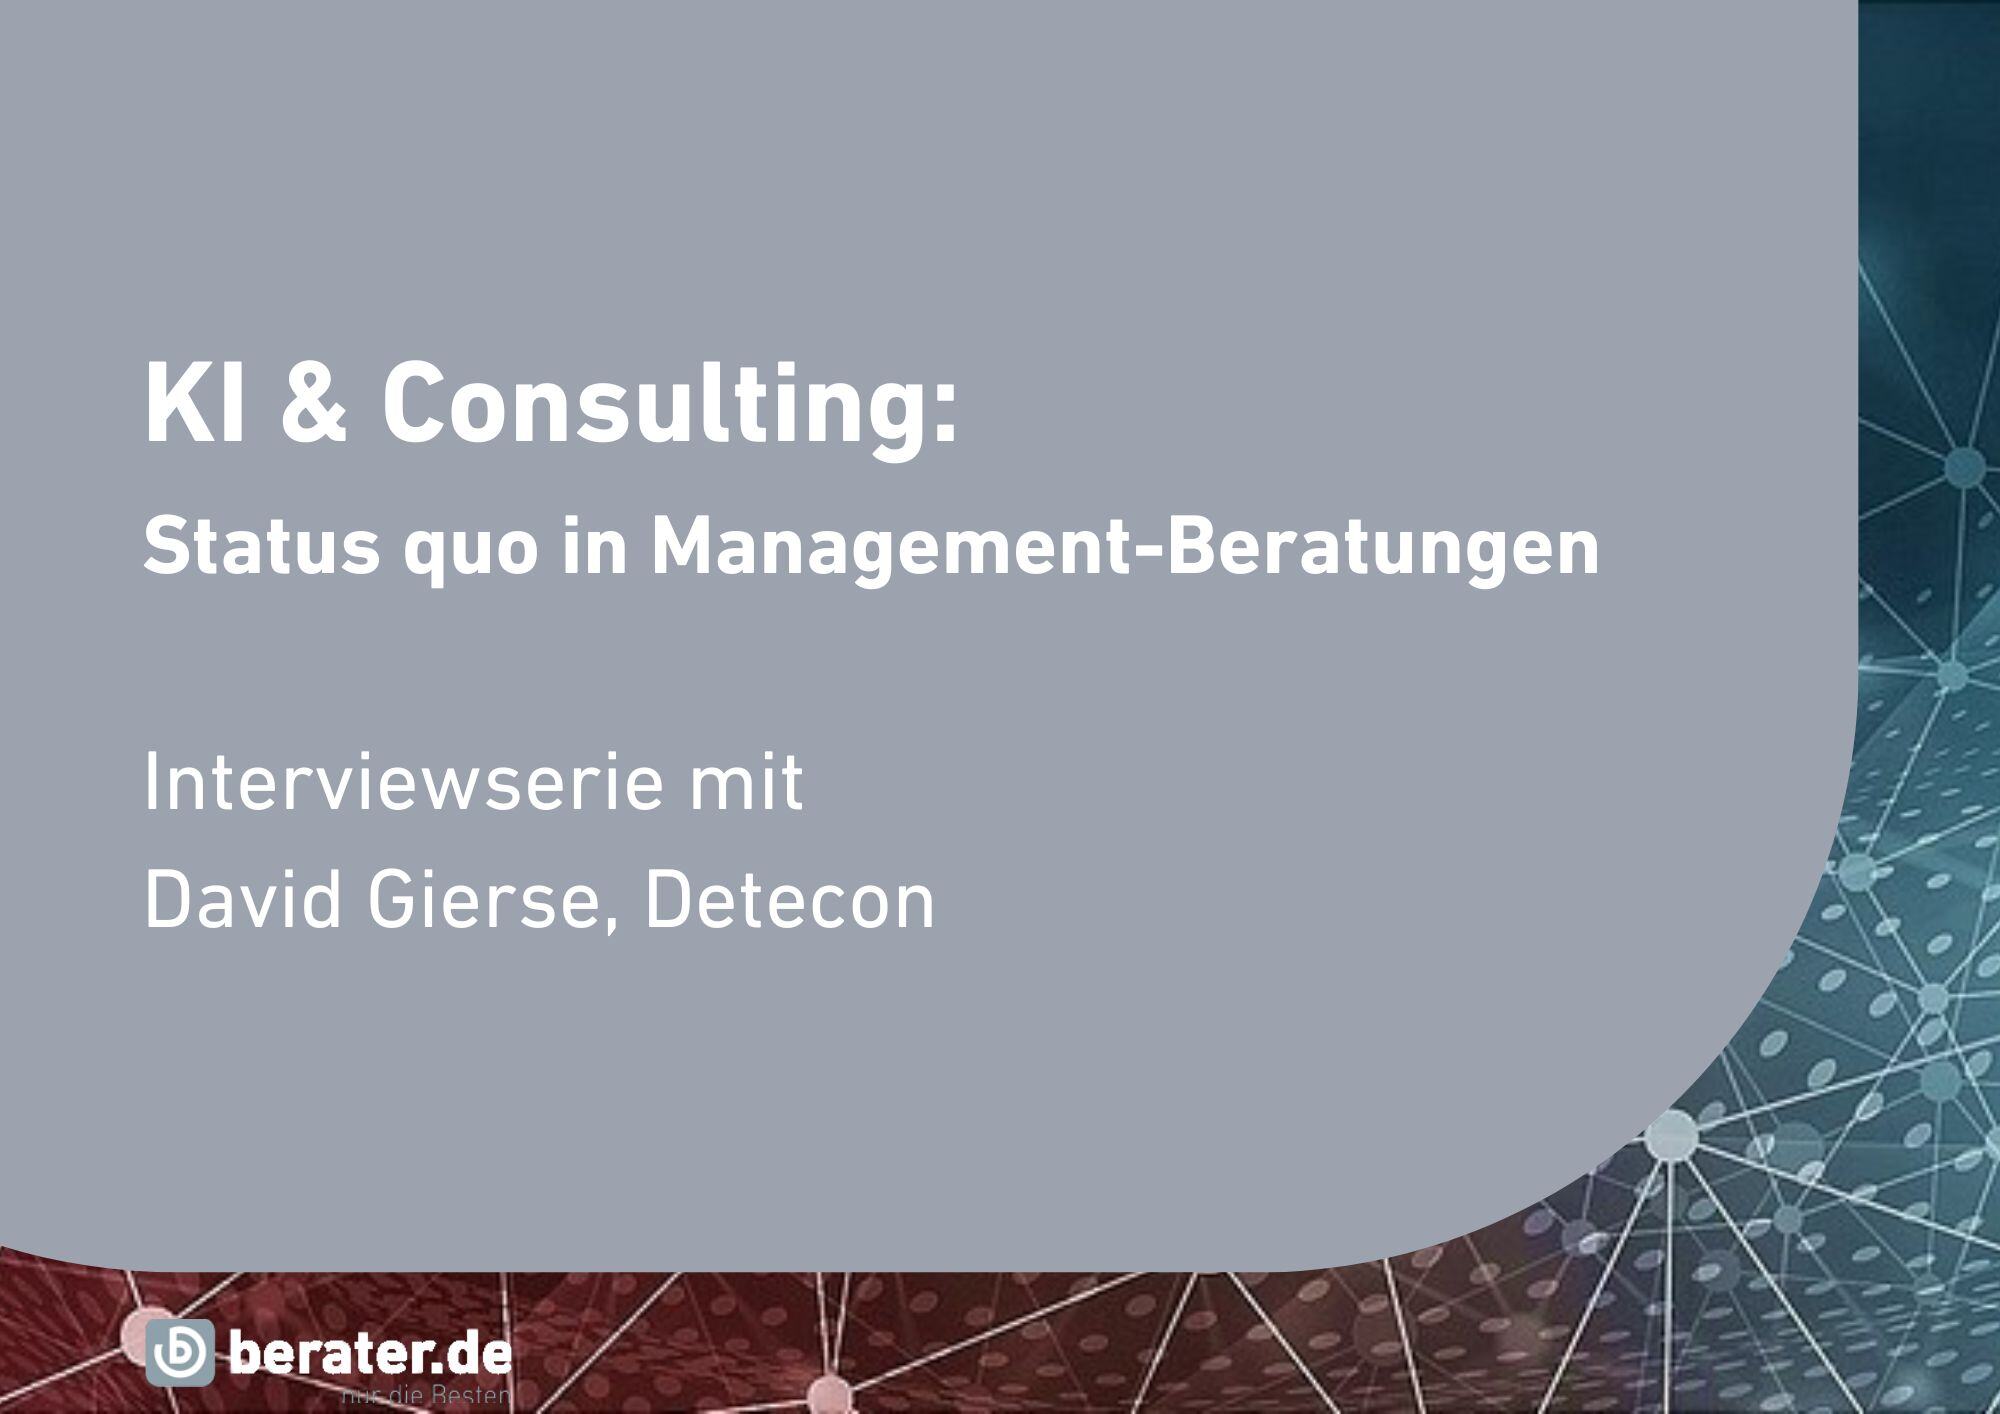 KI-Experte David Gierse (Detecon) über KI in Management- und Strategieberatungen